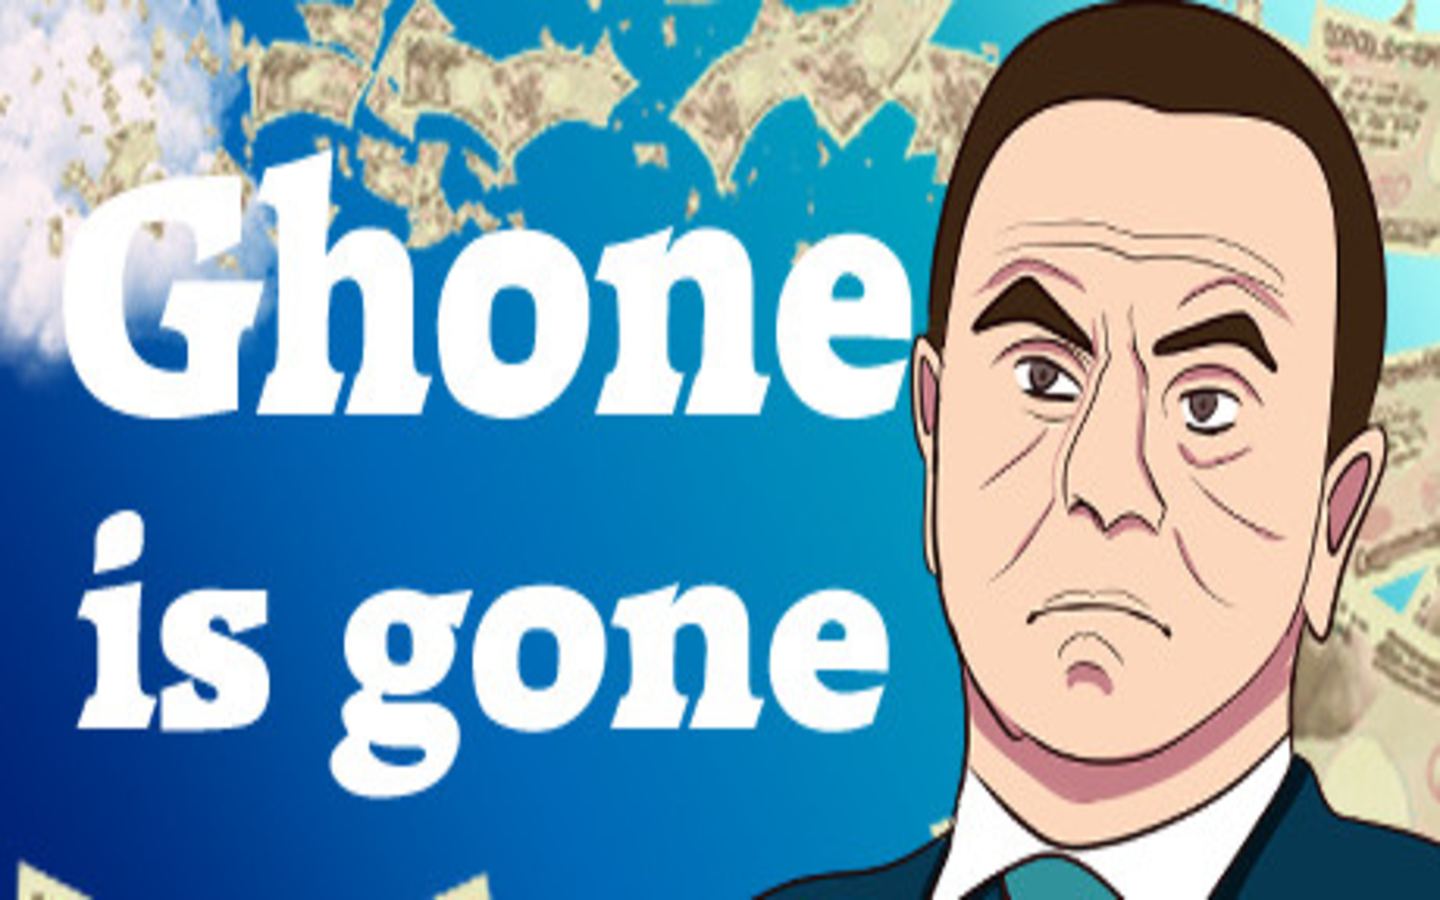 君はカルロスゴーンになれるか。国外脱出を目指す不謹慎ステルスアクションゲーム『Ghone is gone』がSteamで1月20日リリース_001